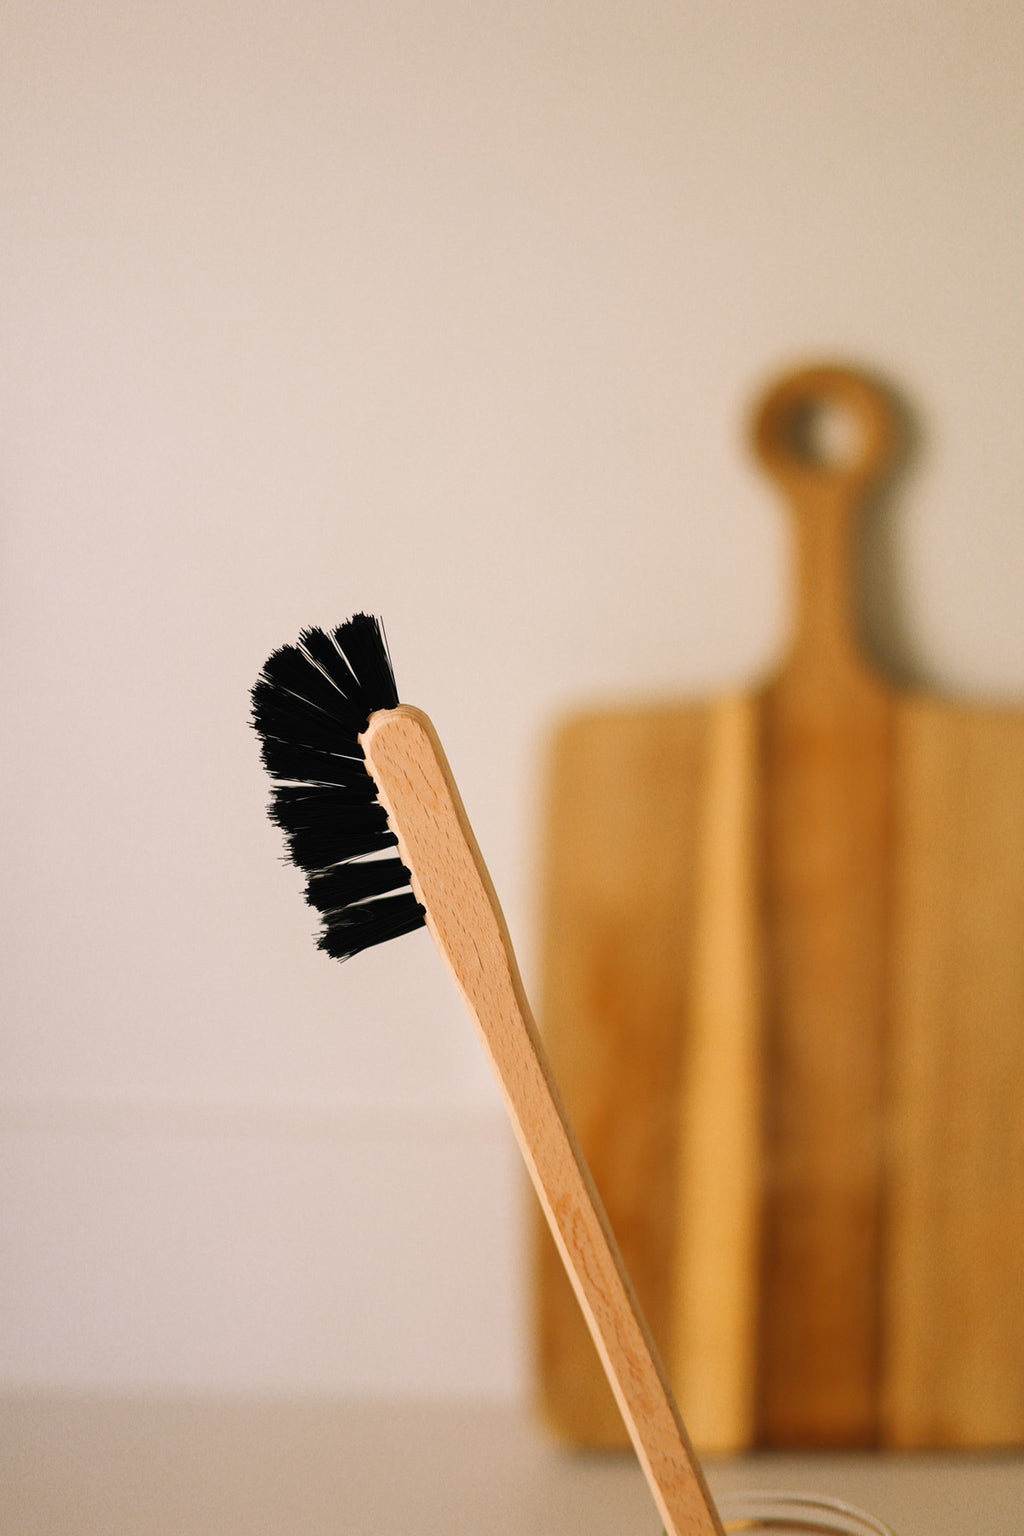 cepillo de madera para limpieza